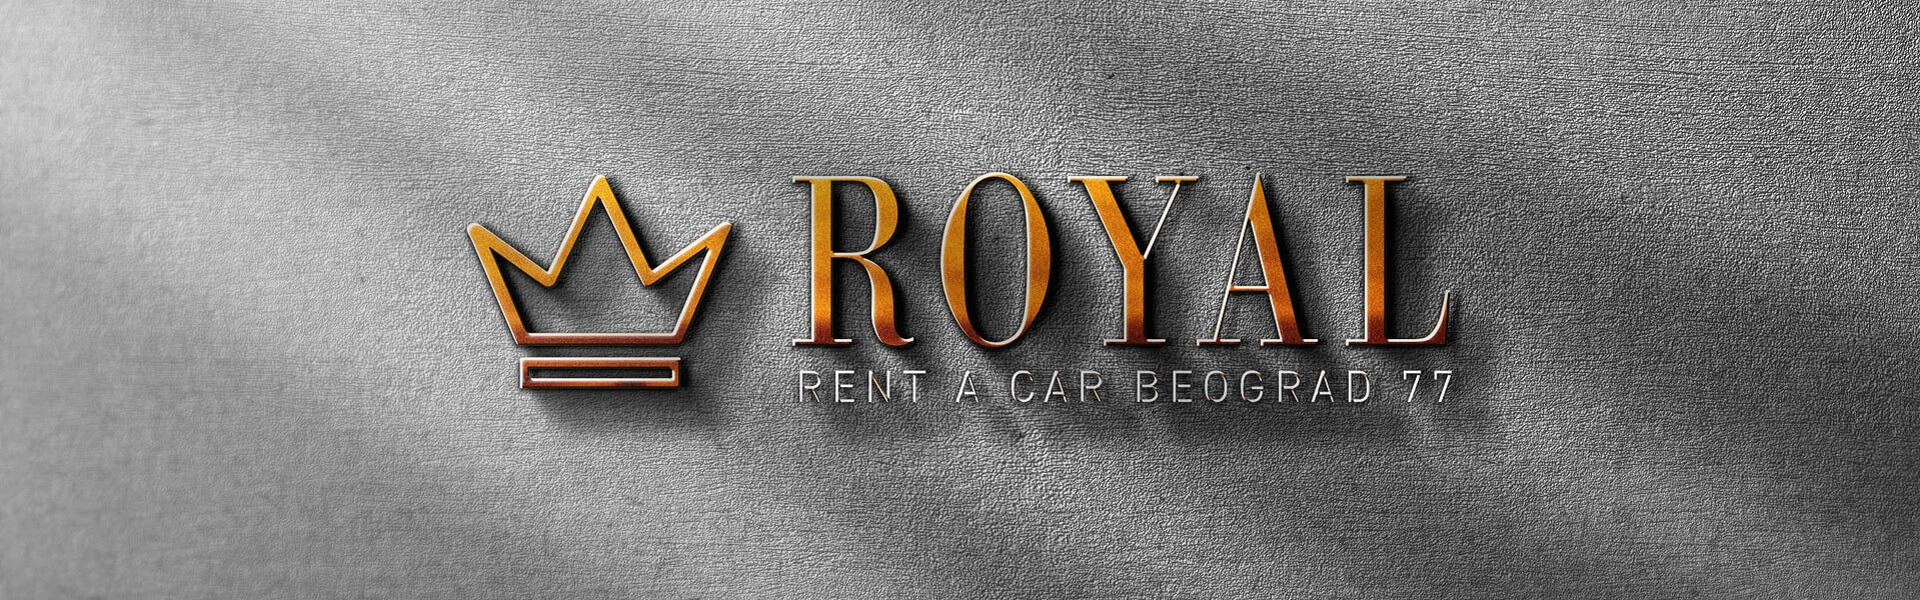 Rent a car Dubai | Car rental Beograd Royal